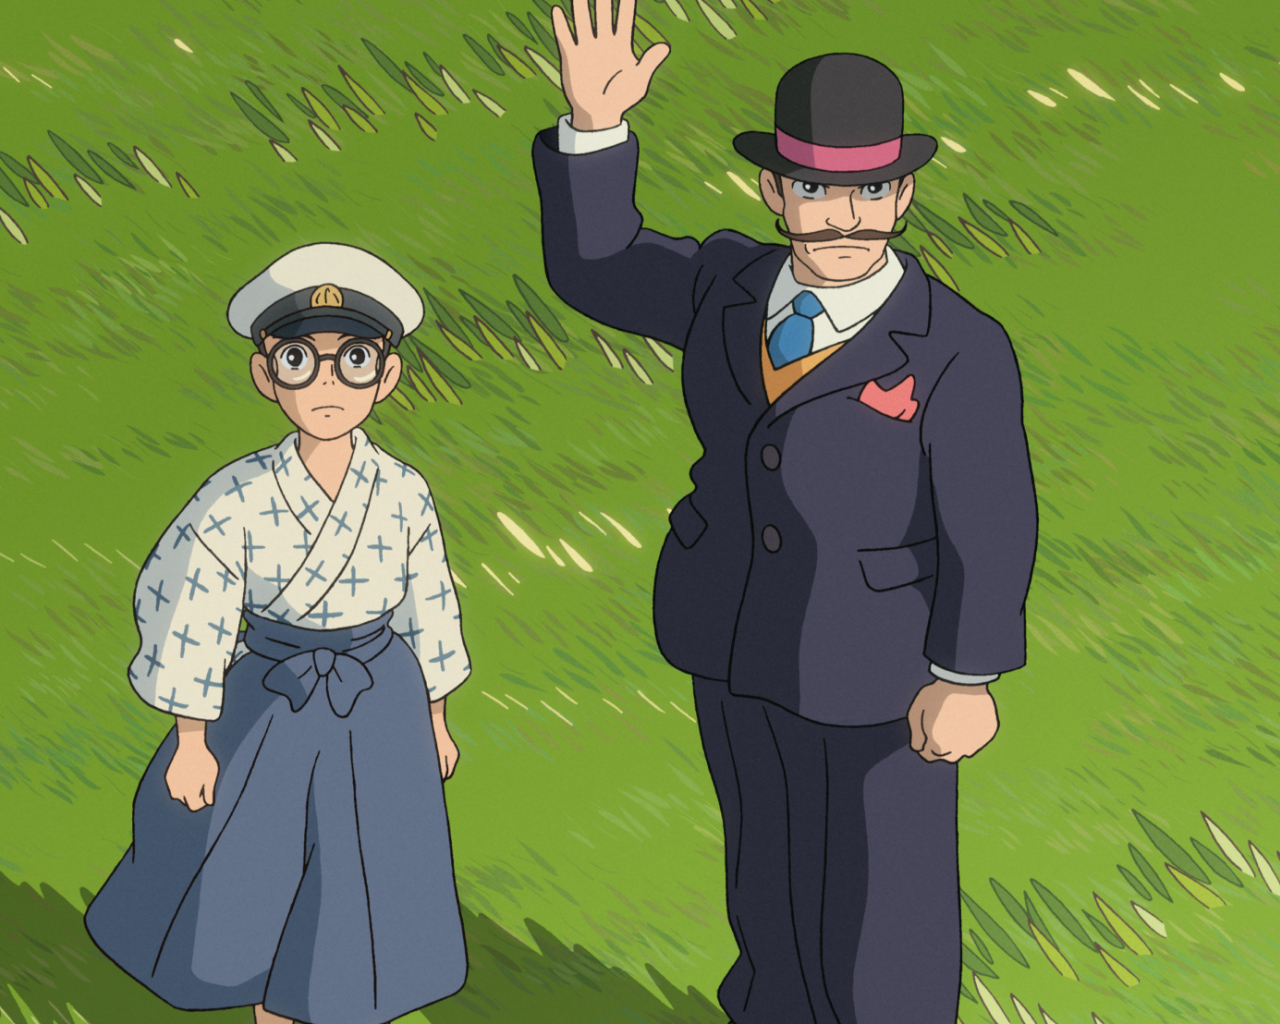 Аниме мультфильм Миядзаки, герои на траве